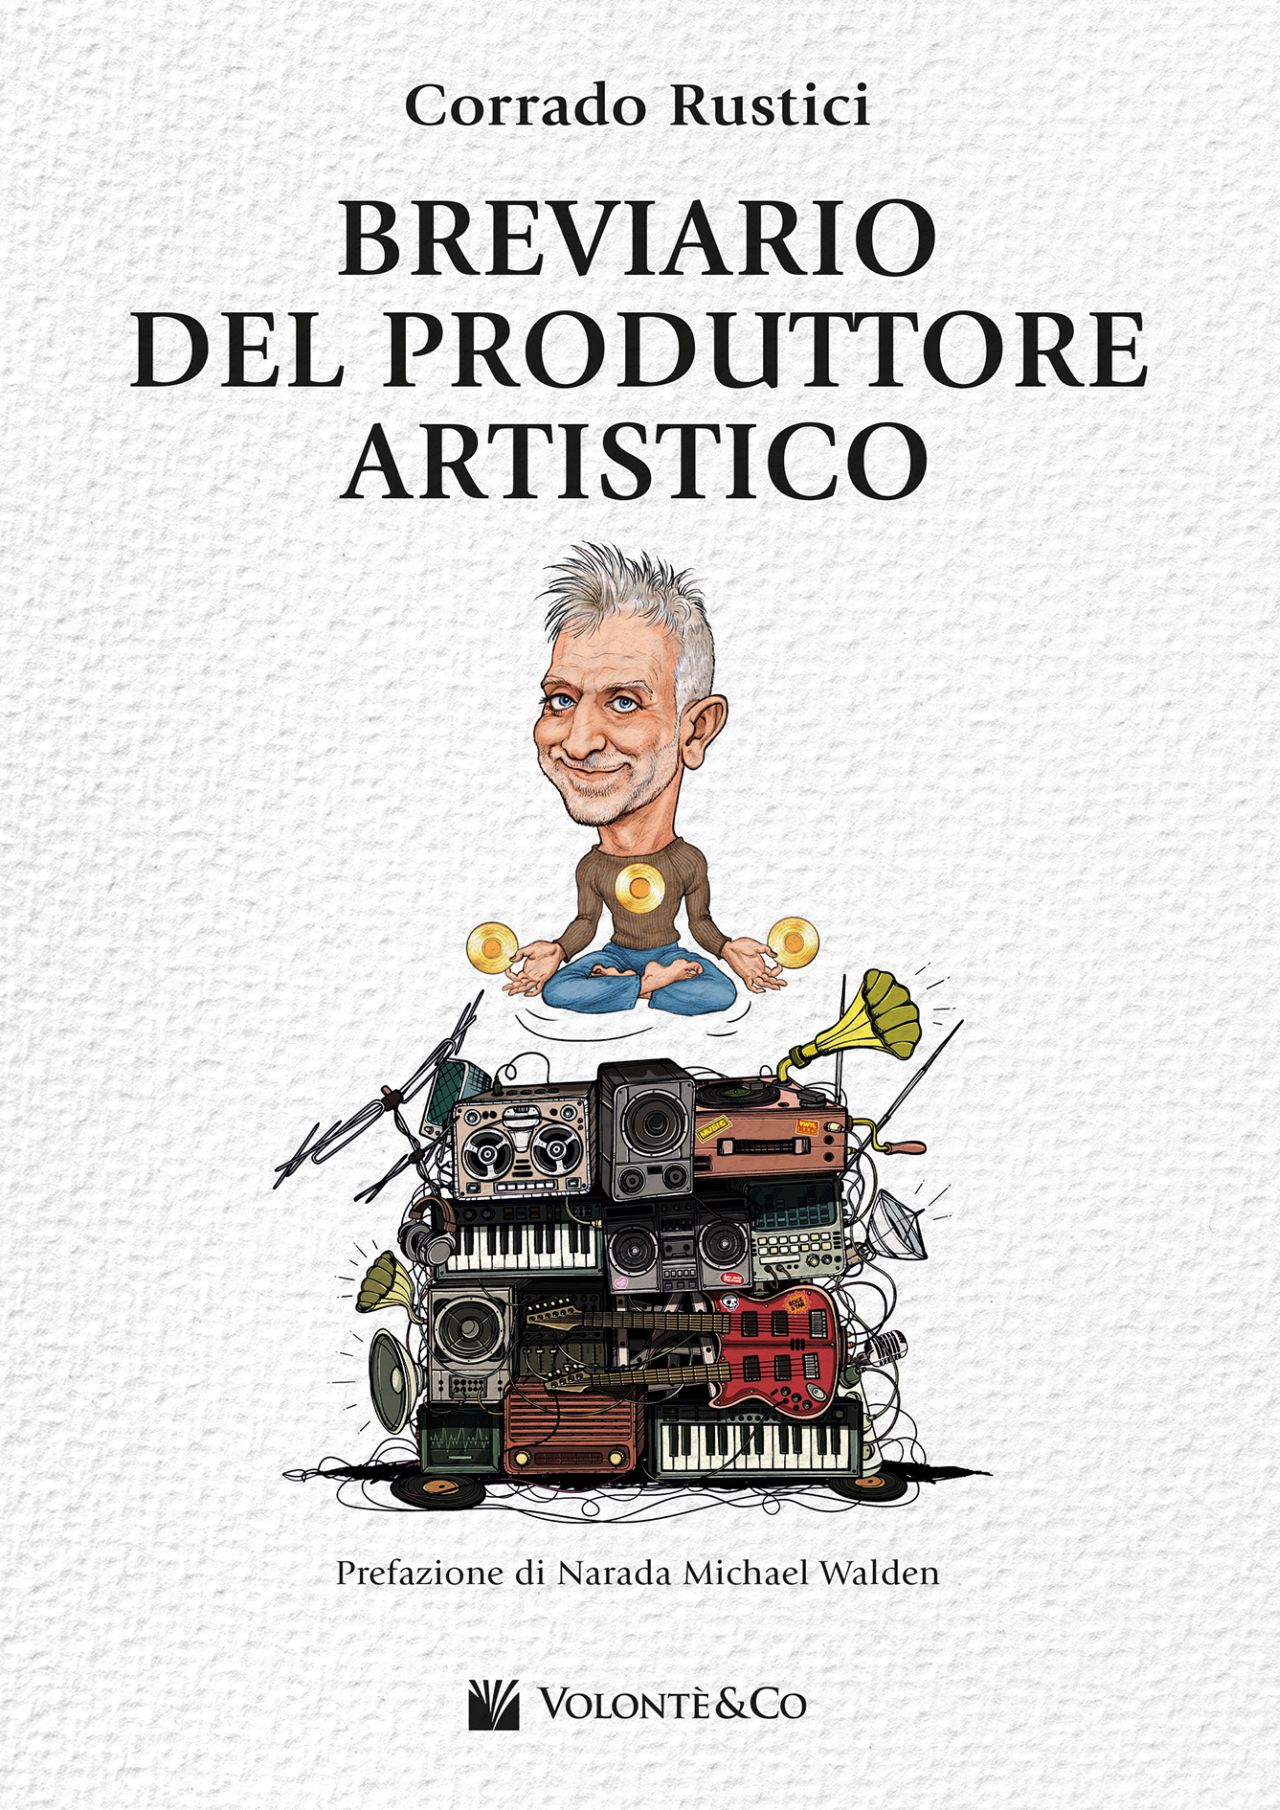 “Breviario del produttore artistico”, il primo libro del chitarrista e produttore discografico Corrado Rustici